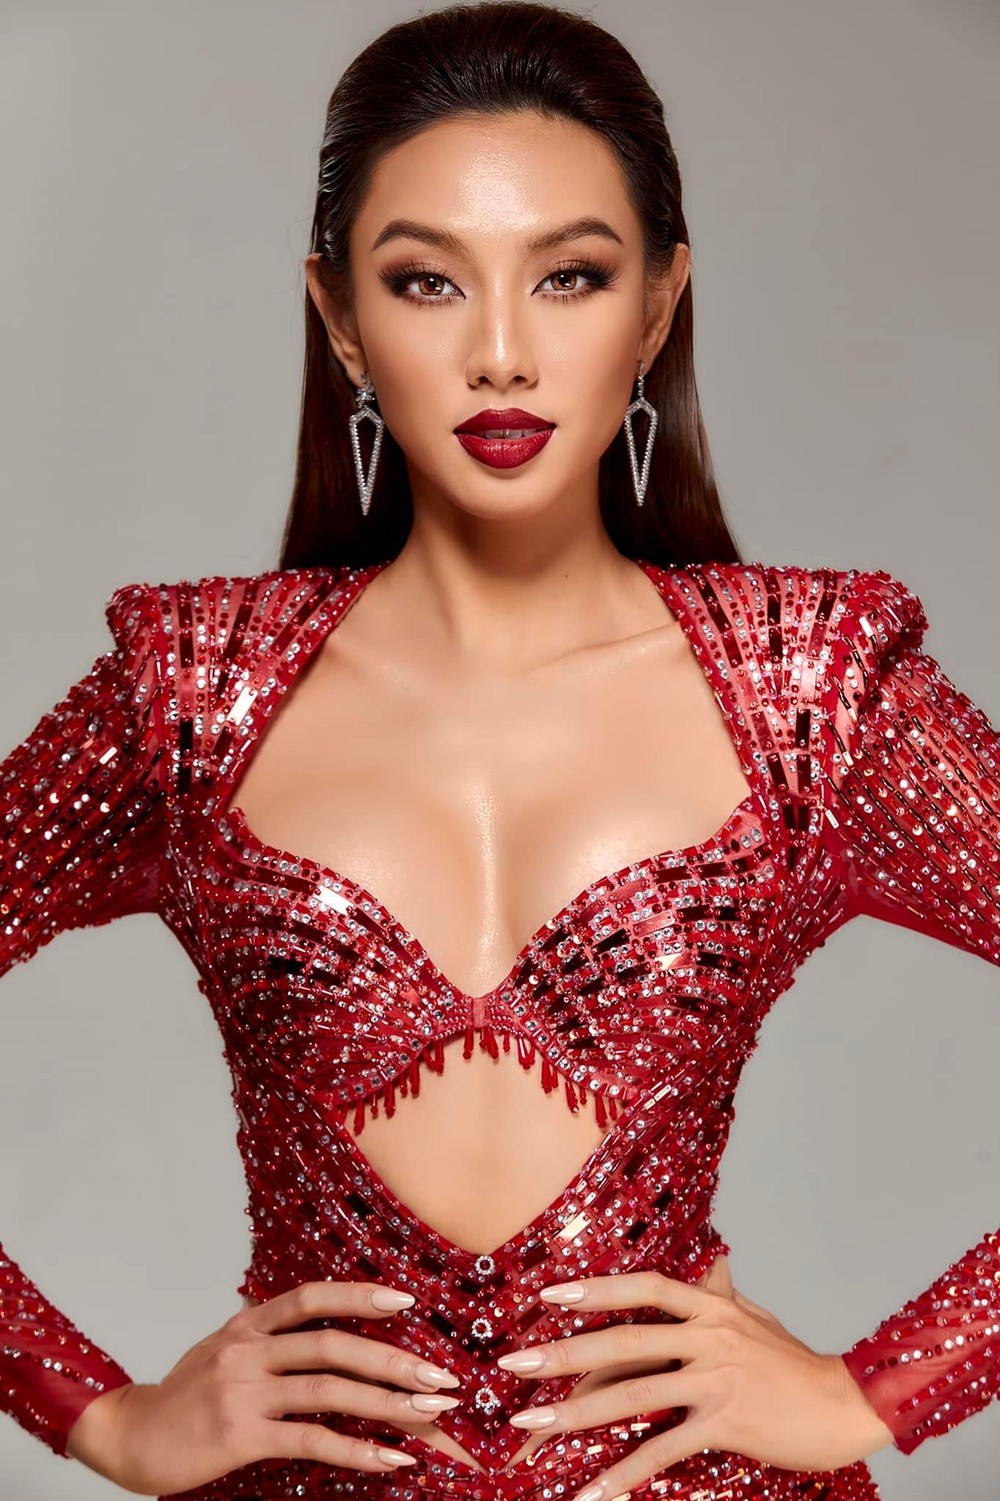 Miss International Chuyện đặc biệt sau thiết kế dạ hội của Thùy Tiên  Văn  hóa  Vietnam VietnamPlus